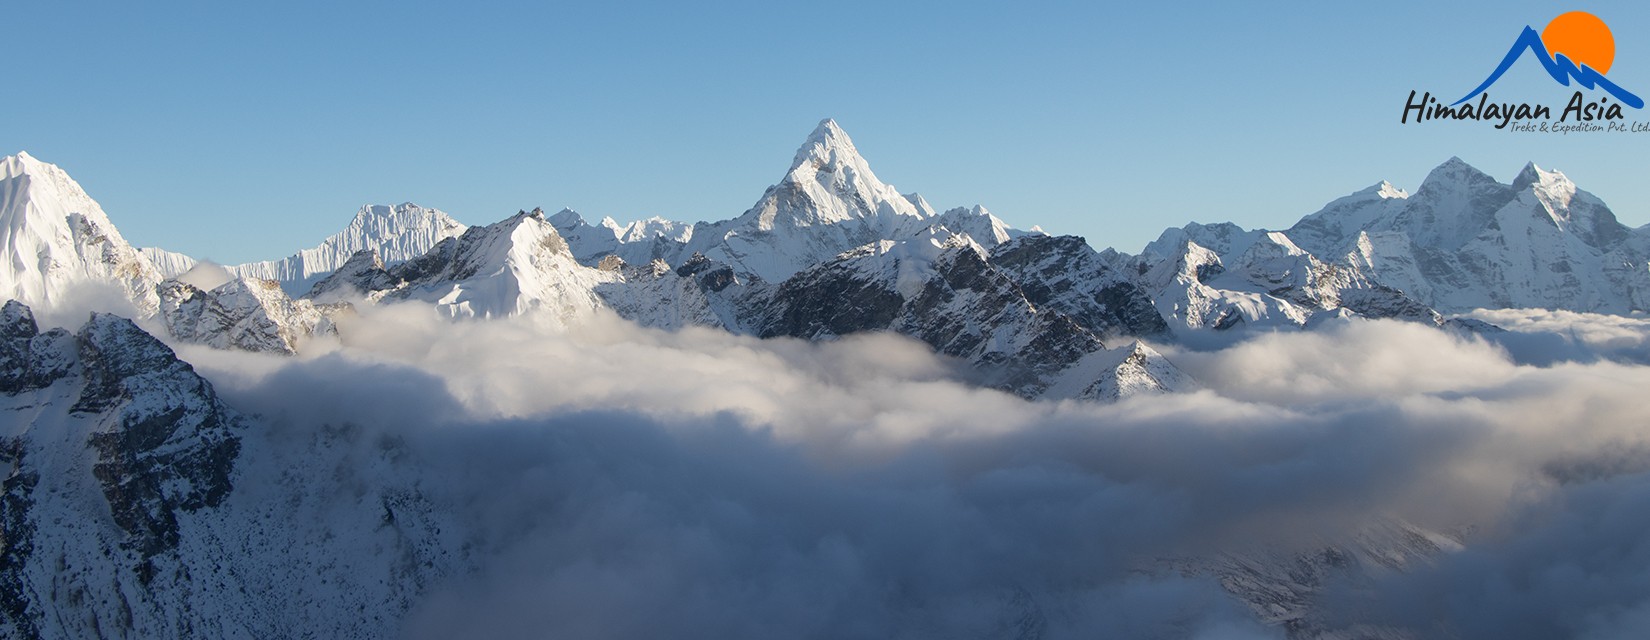 View-Everest-Himalayan